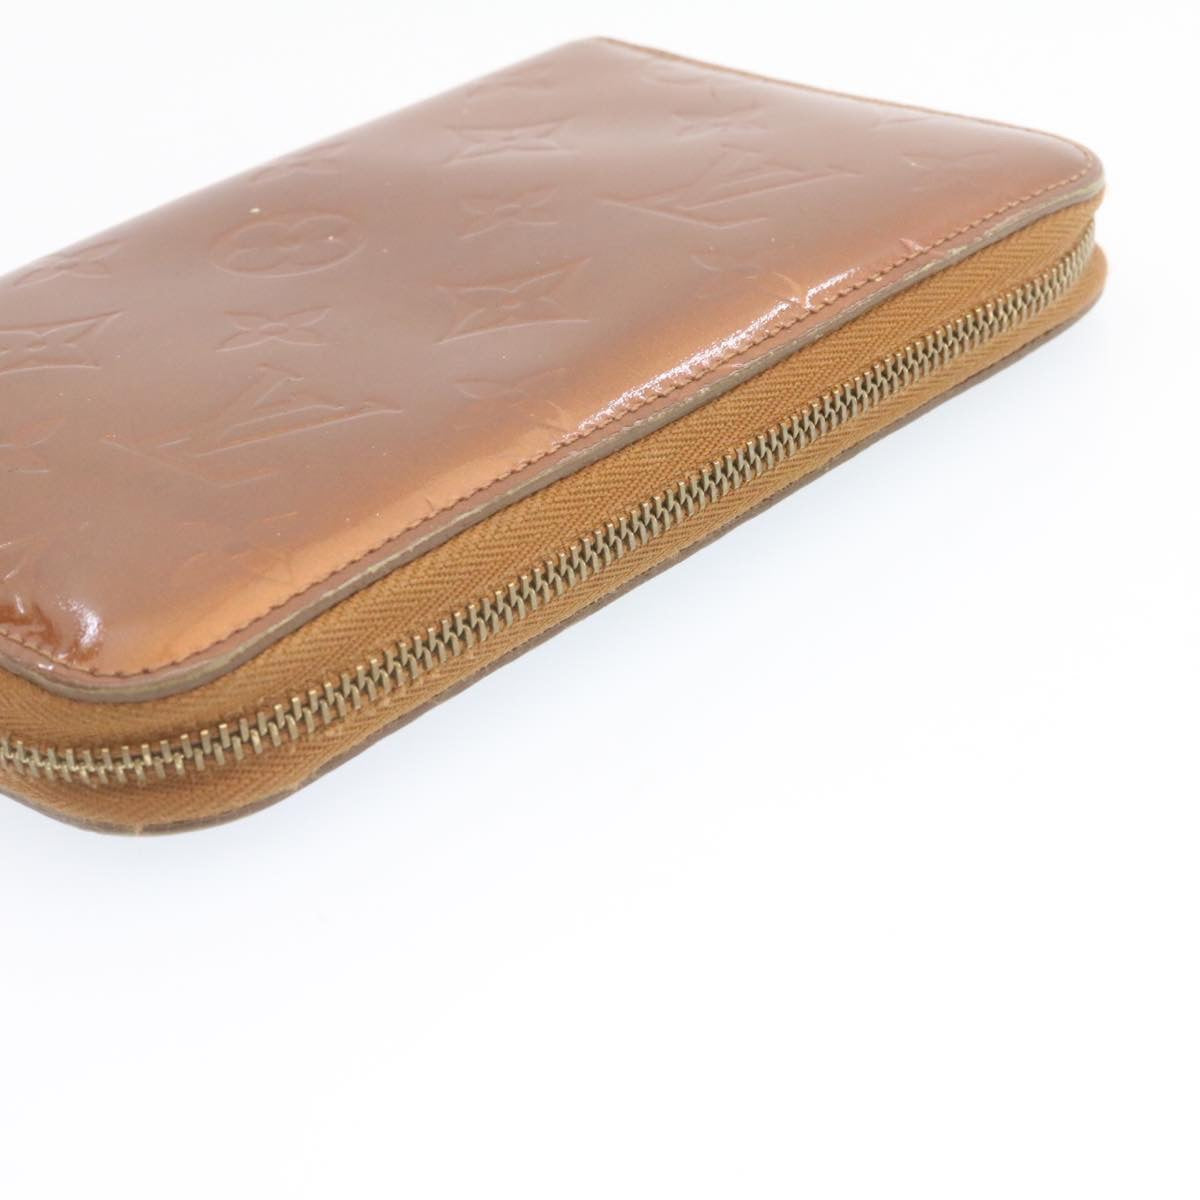 Louis Vuitton Medium Zippy Wallet in Bronze Vernis - SOLD